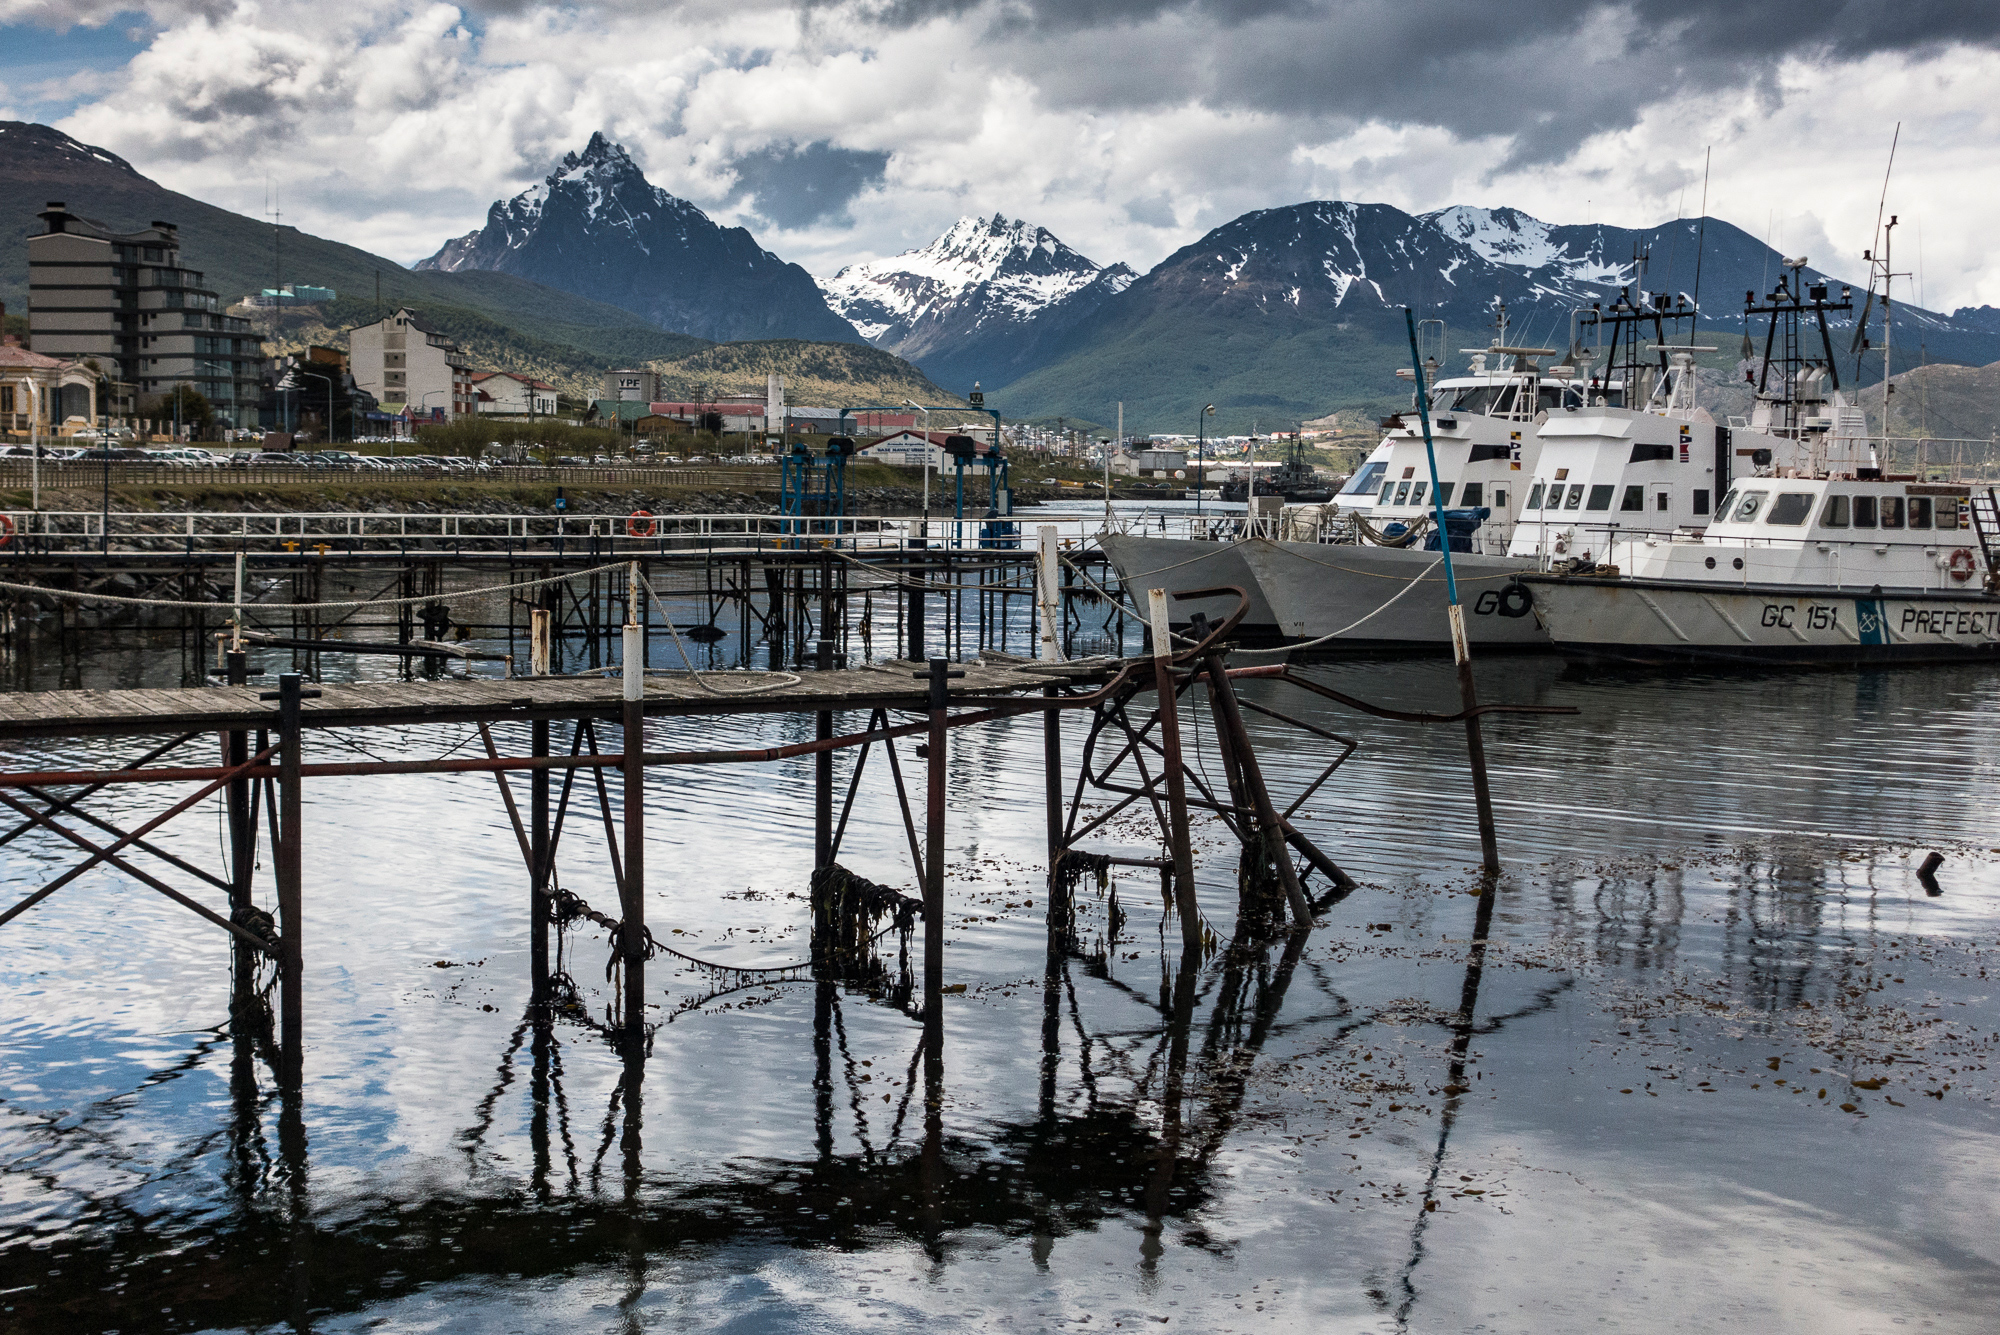 Harbor & docks, Ushuaia, Argentina”